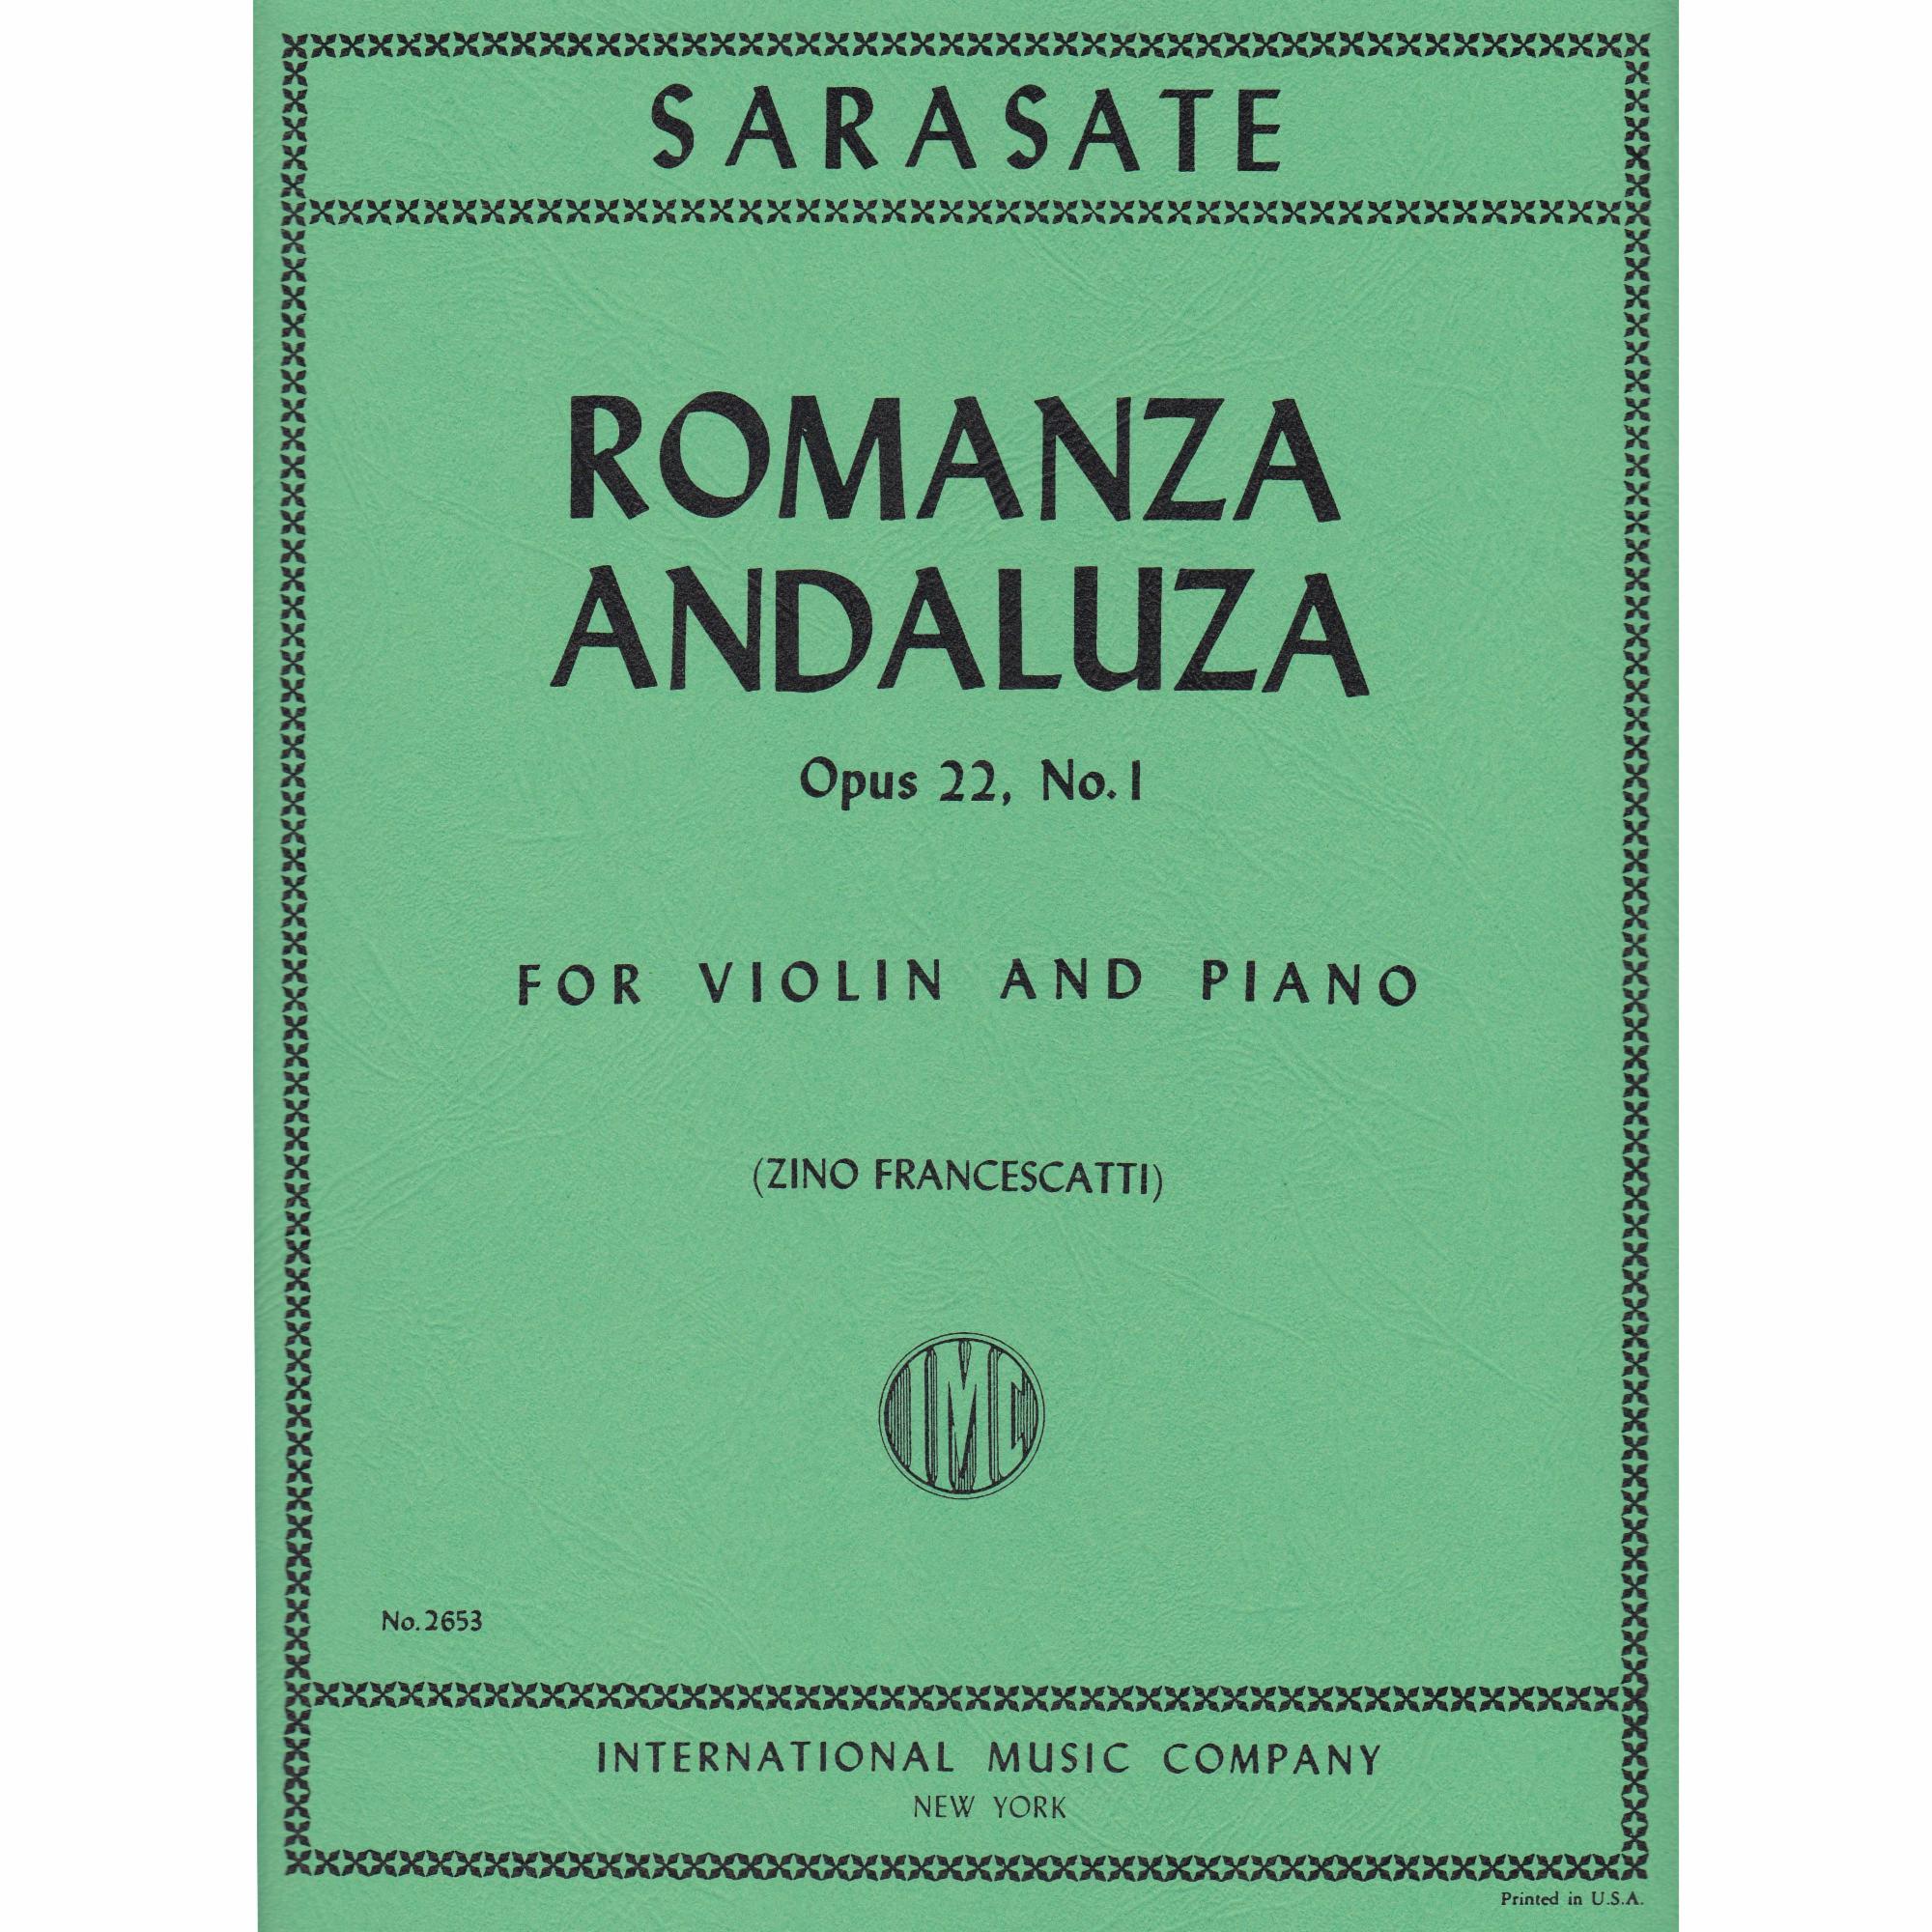 Romanza Andaluza for Violin and Piano, Op. 22, No. 1